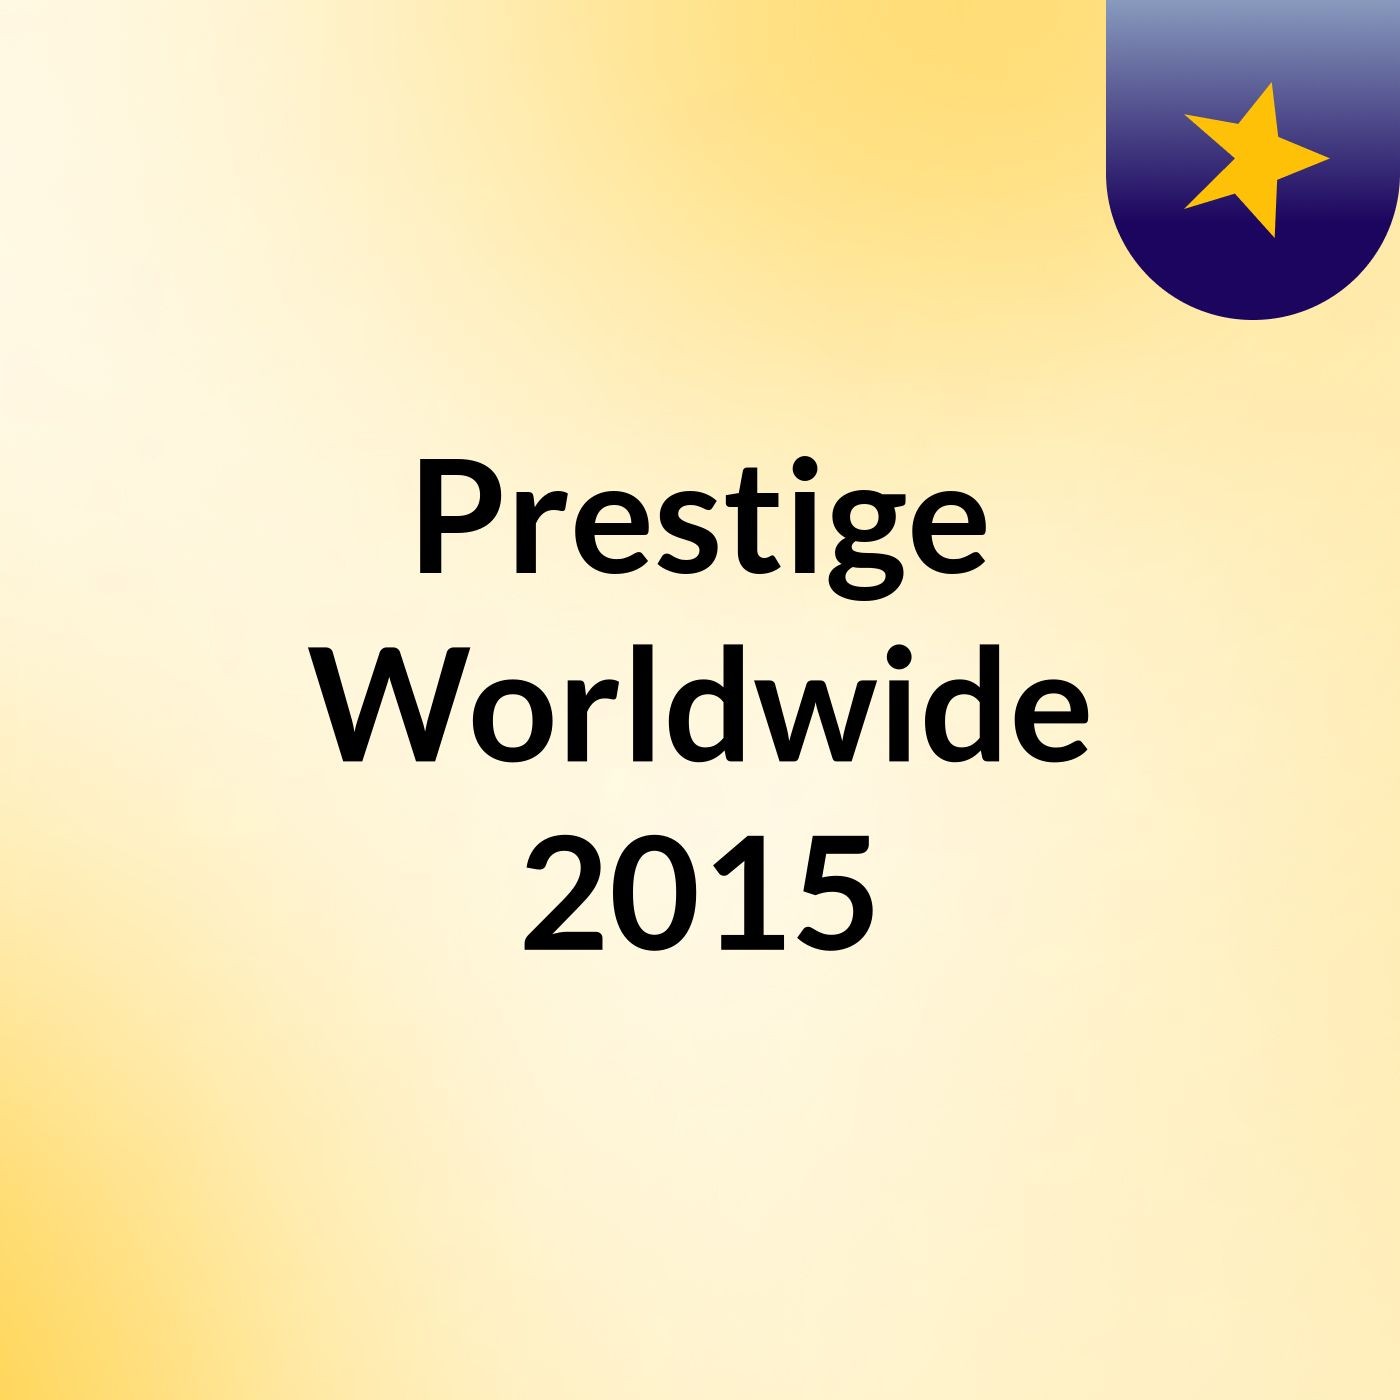 Prestige Worldwide 2015